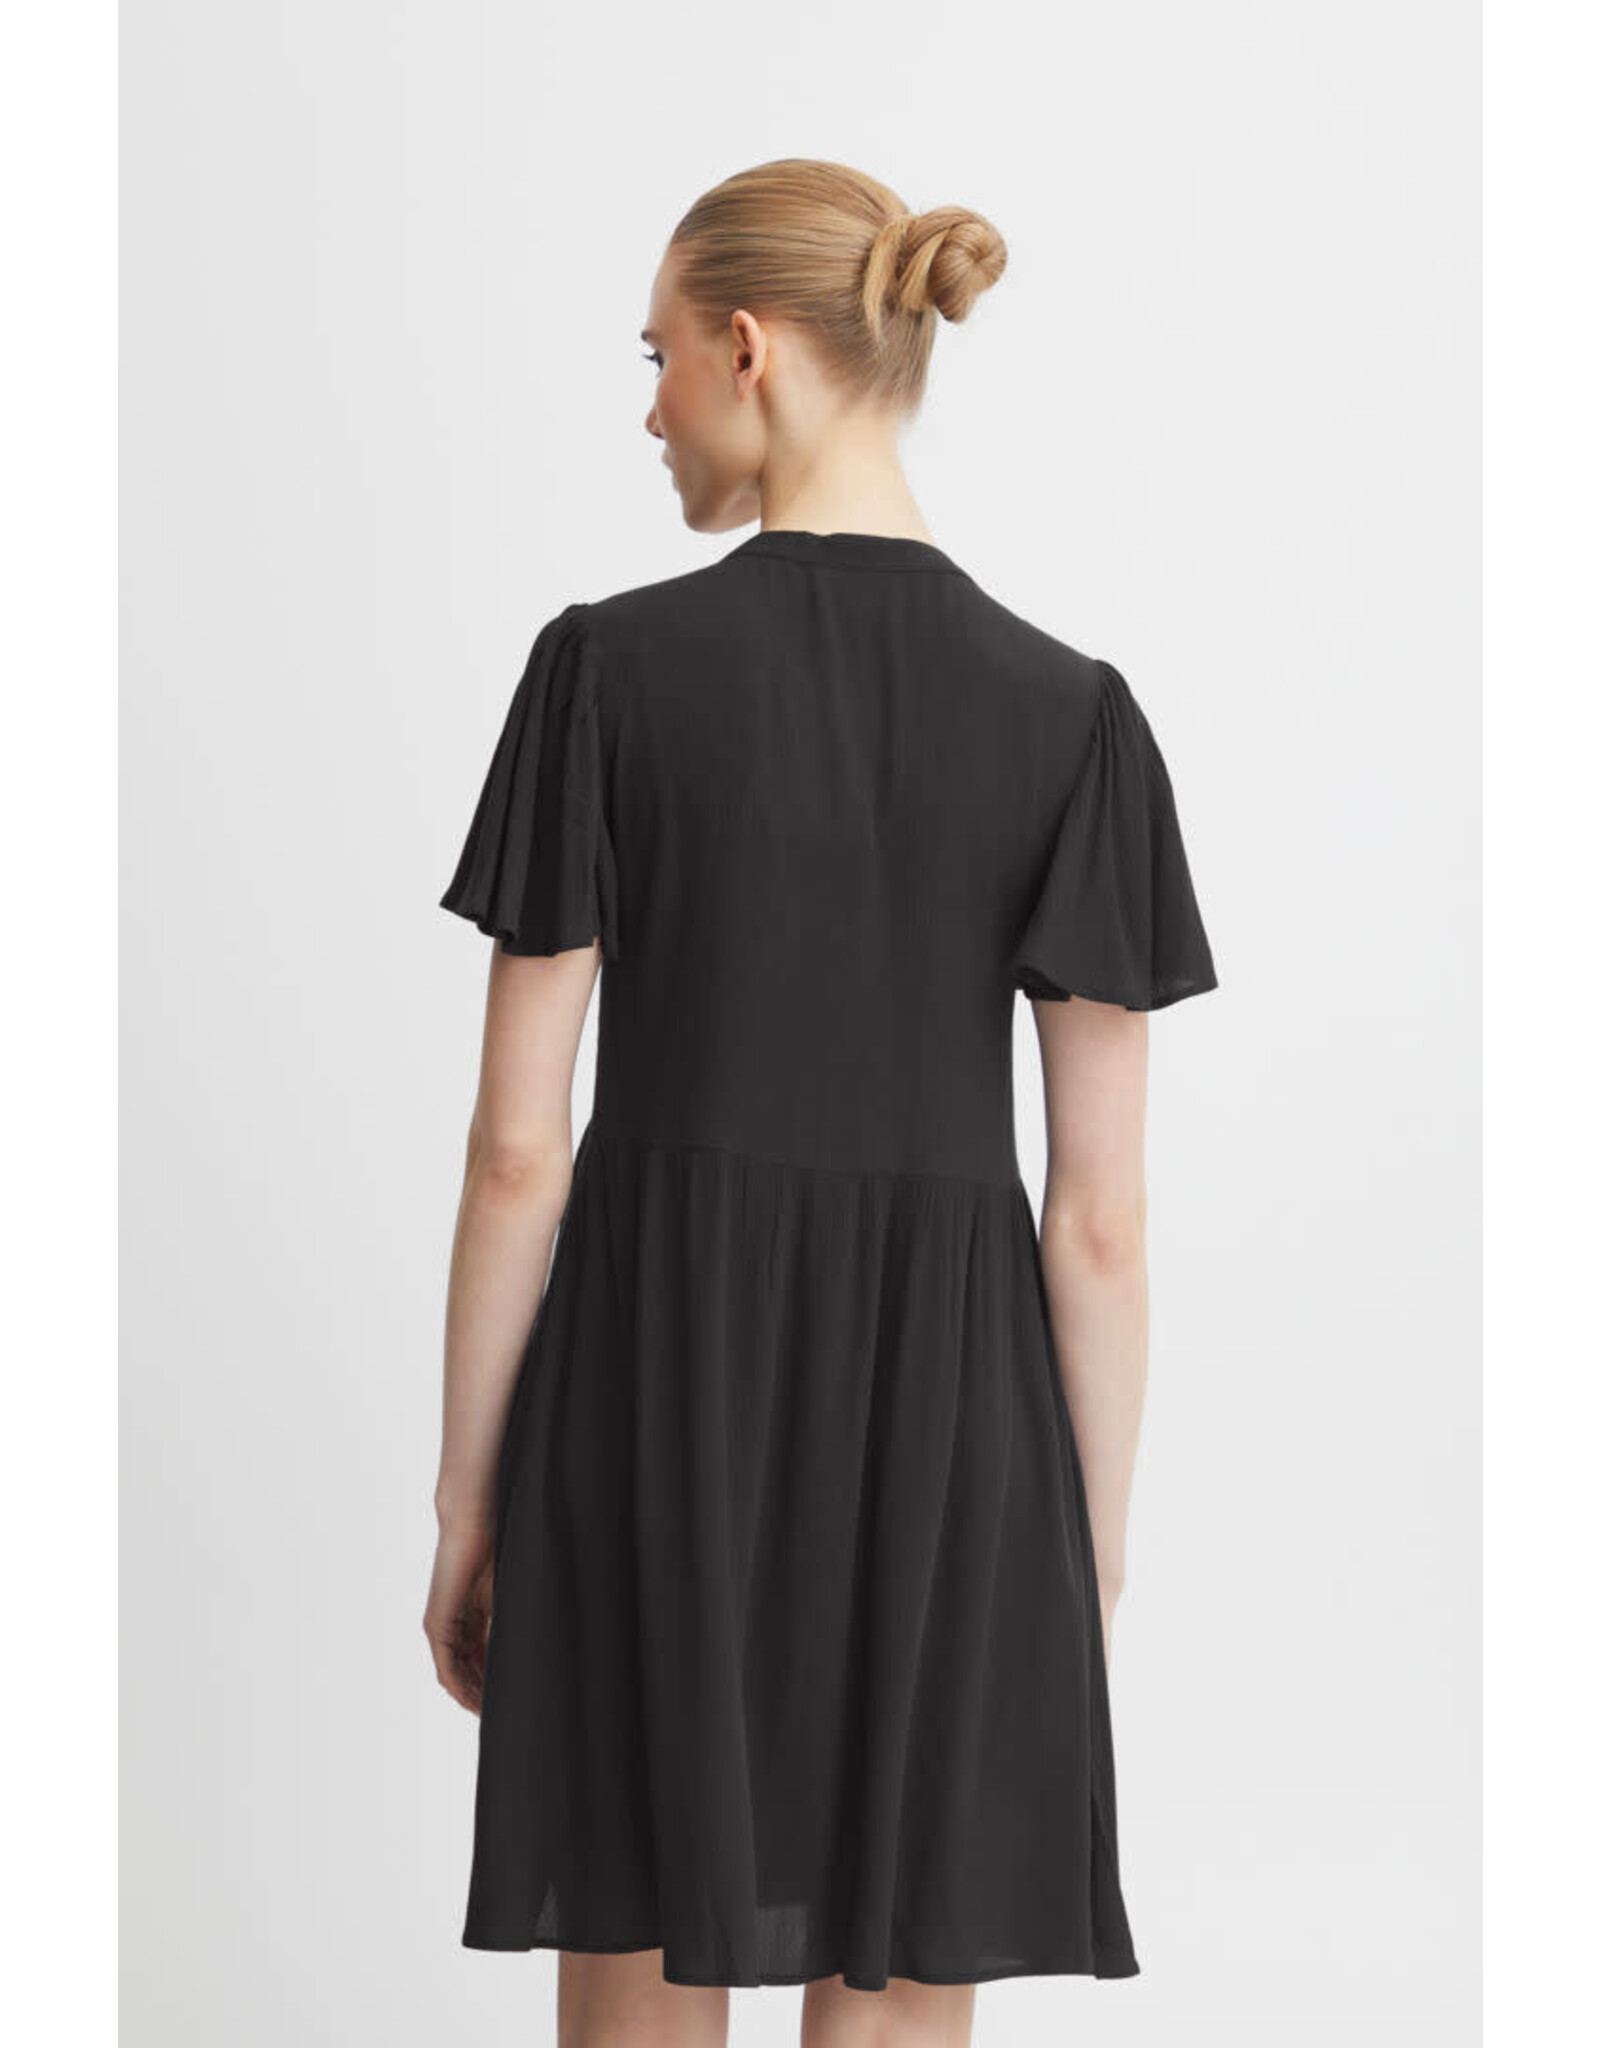 ICHI ICHI - Marrakech dress (black)